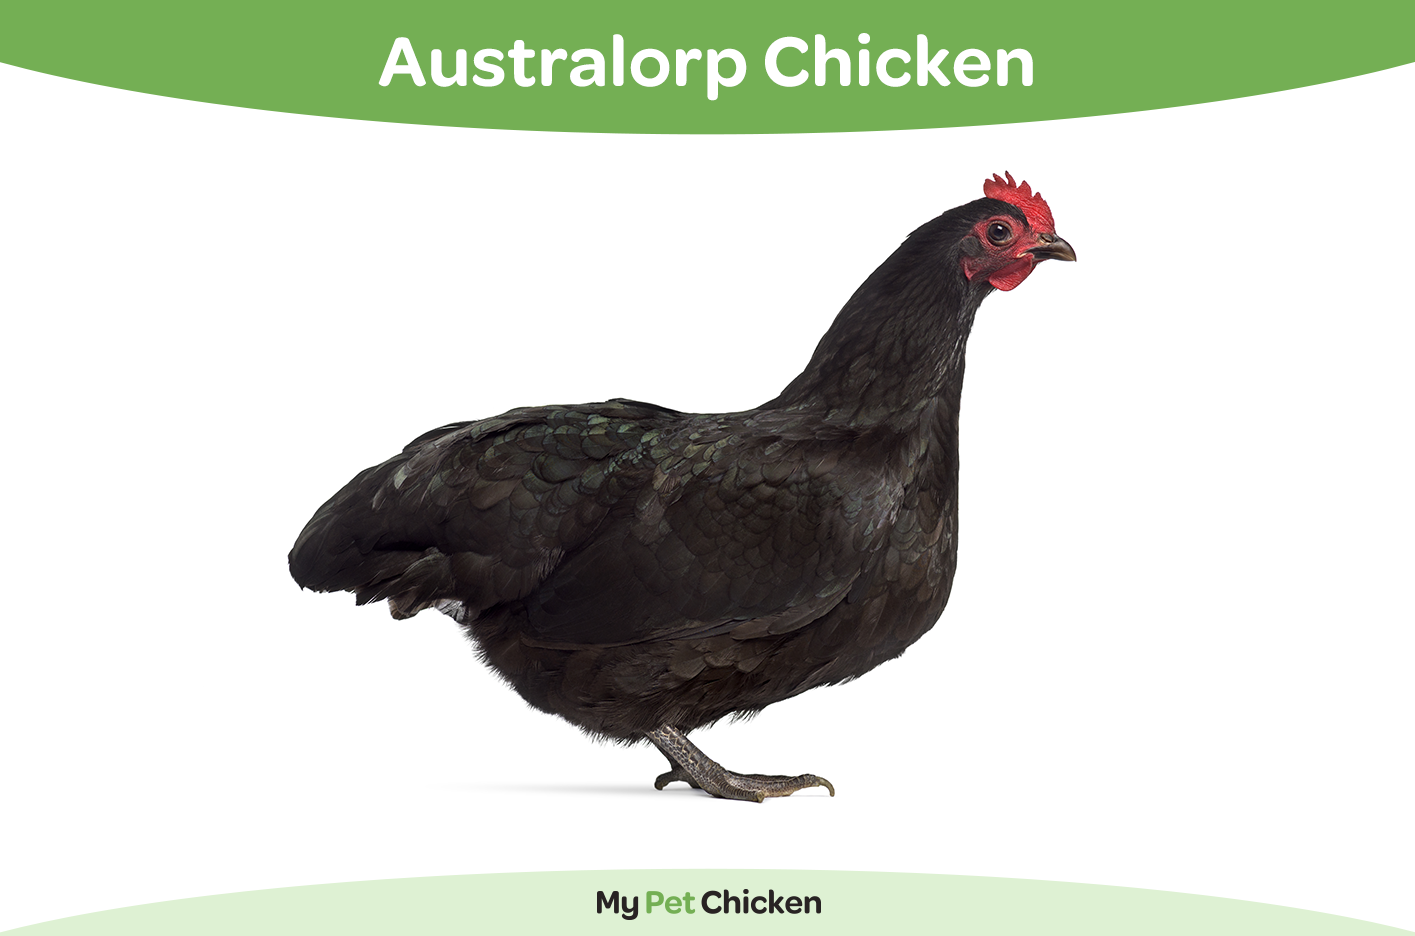 Australorp chicken